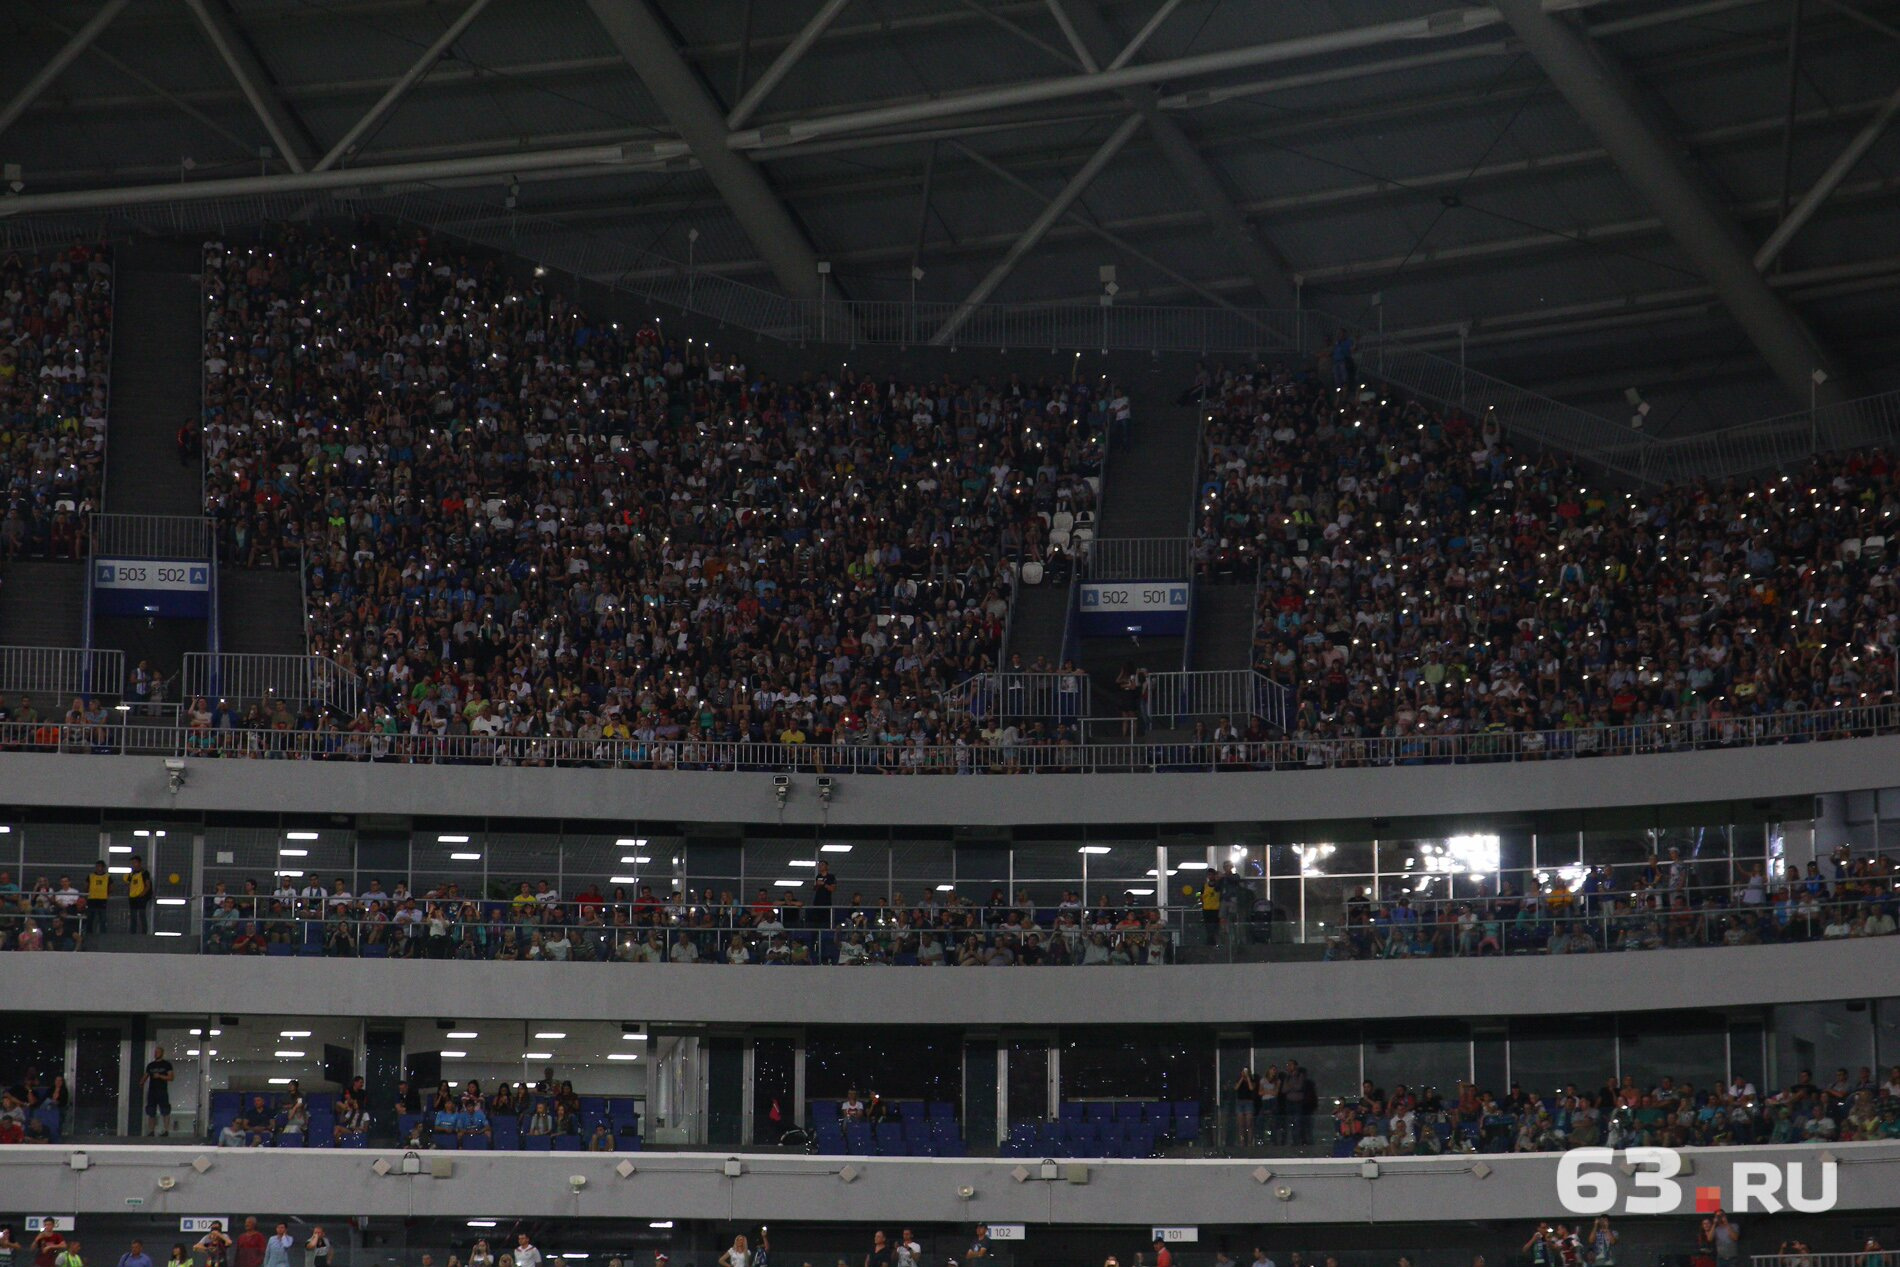 Стадион зажегся тысячами фонариков. Зрелище великолепное!